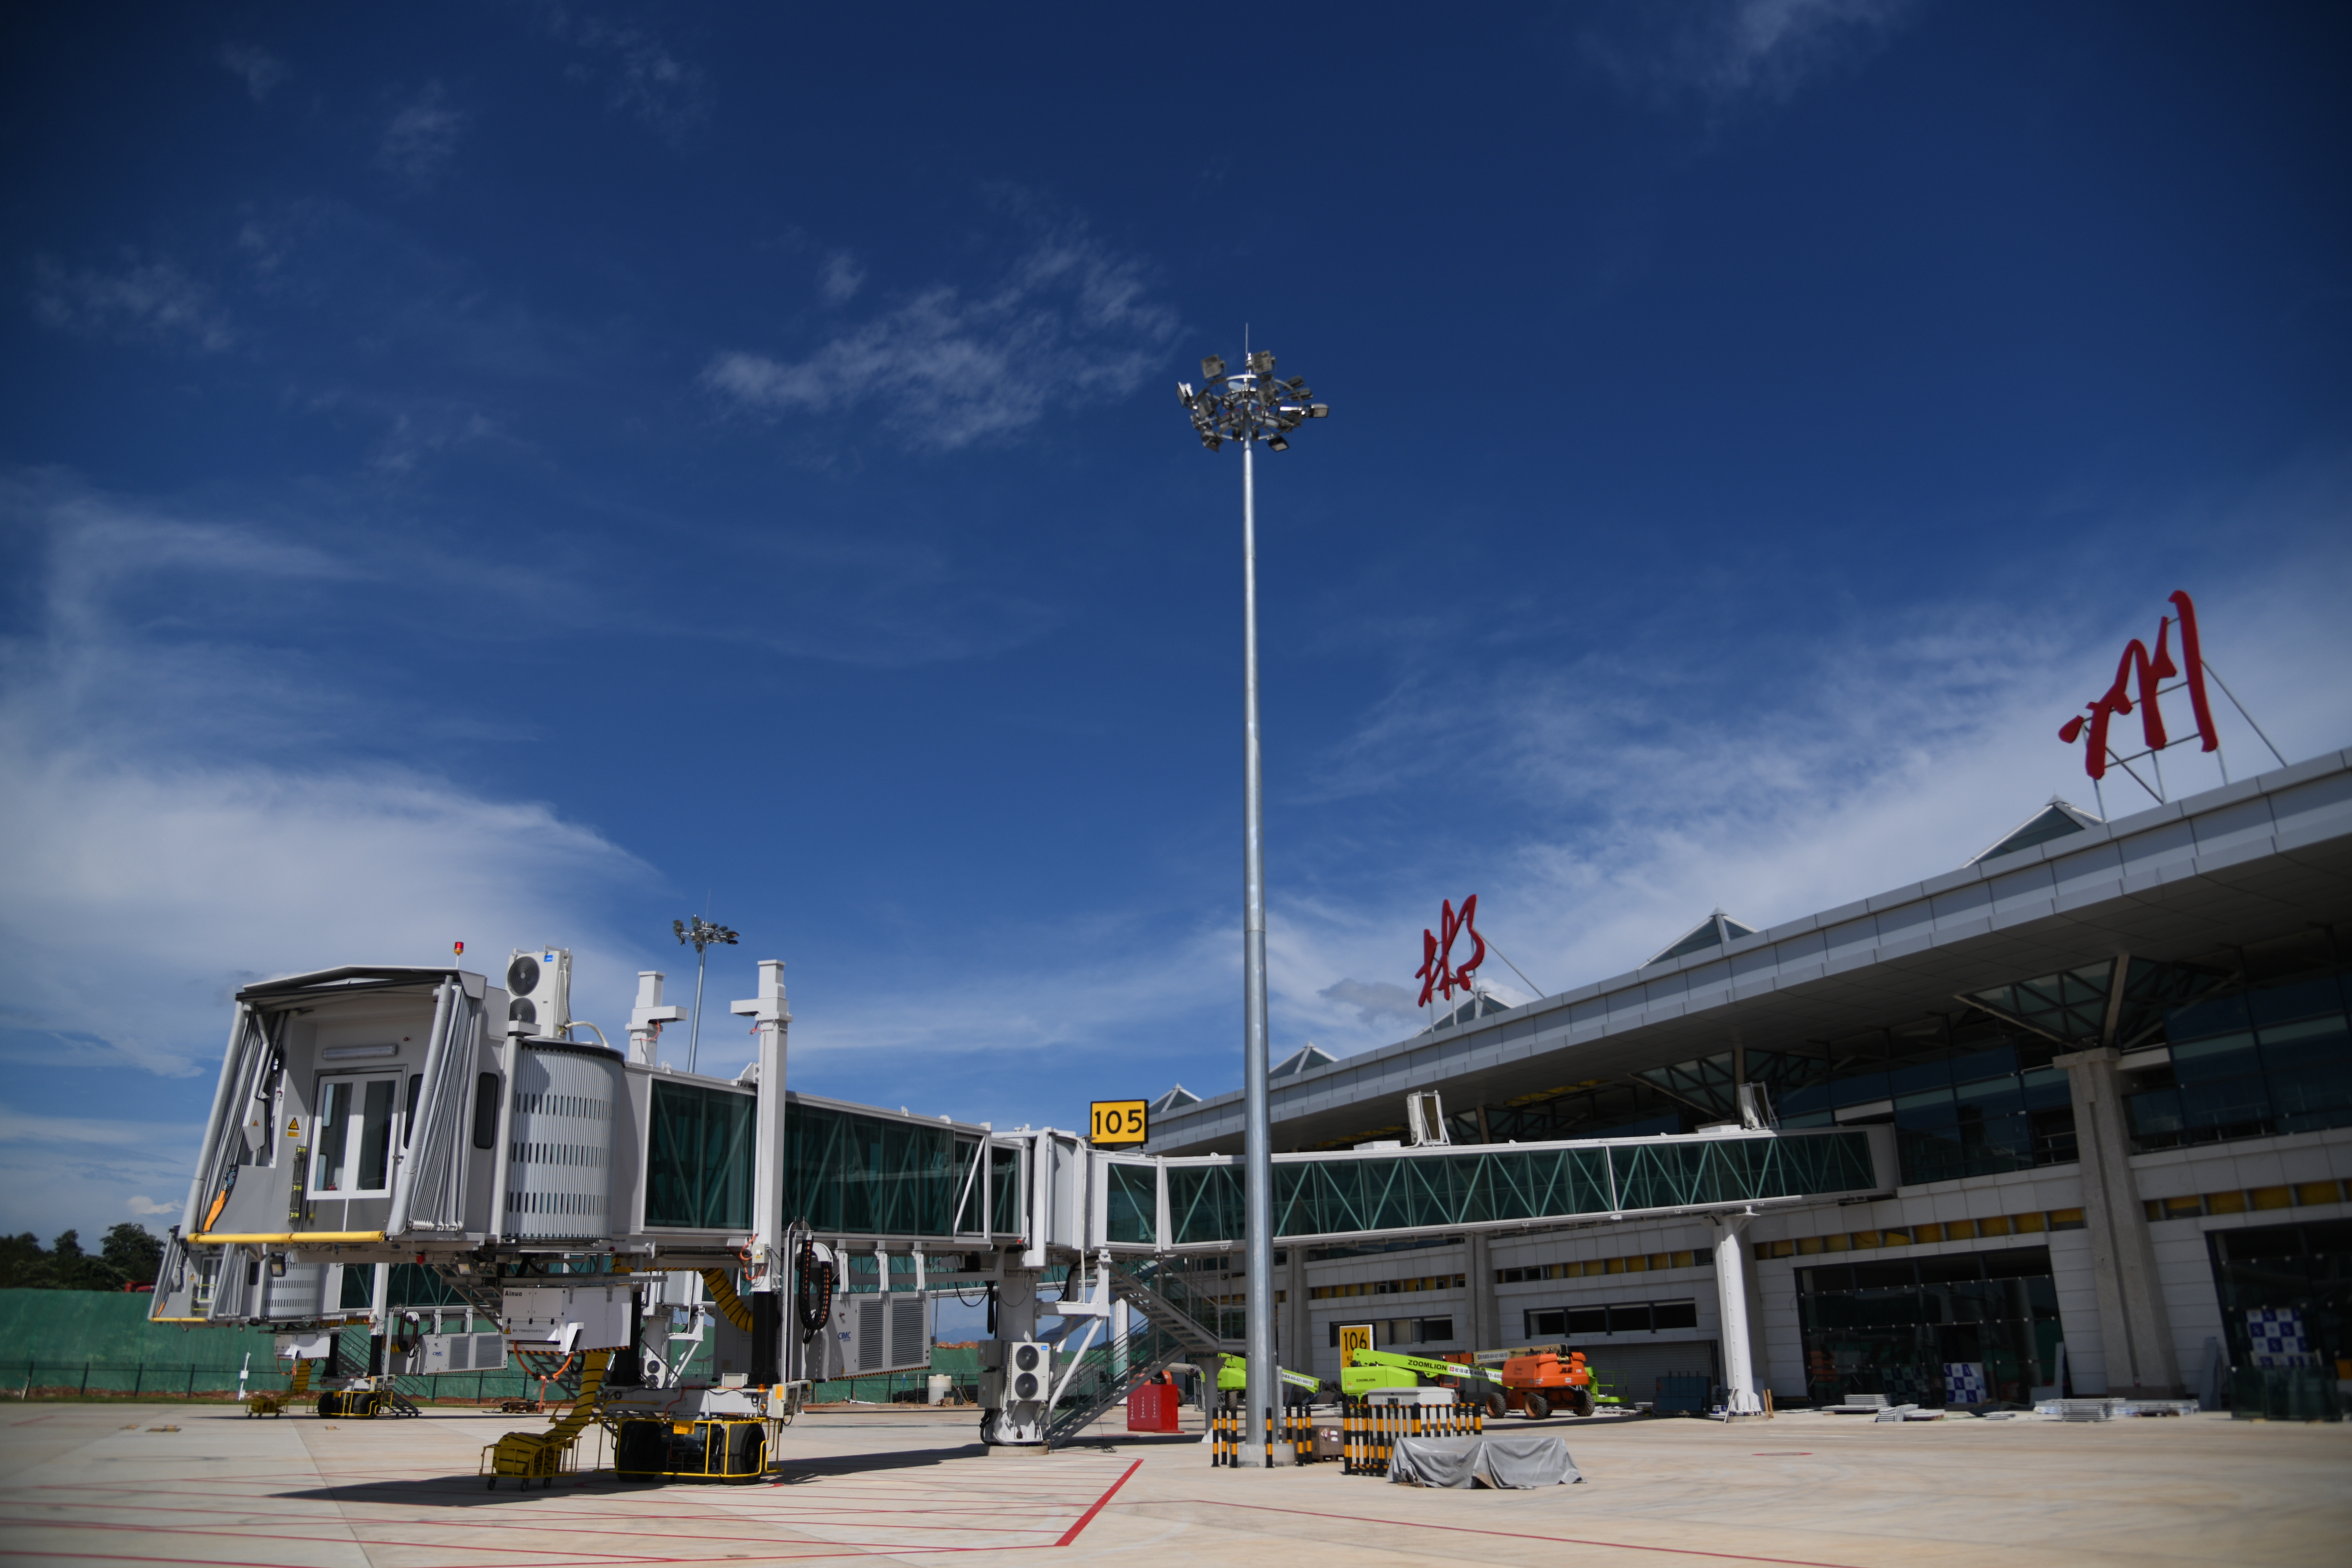 郴州北湖机场航站楼图图片